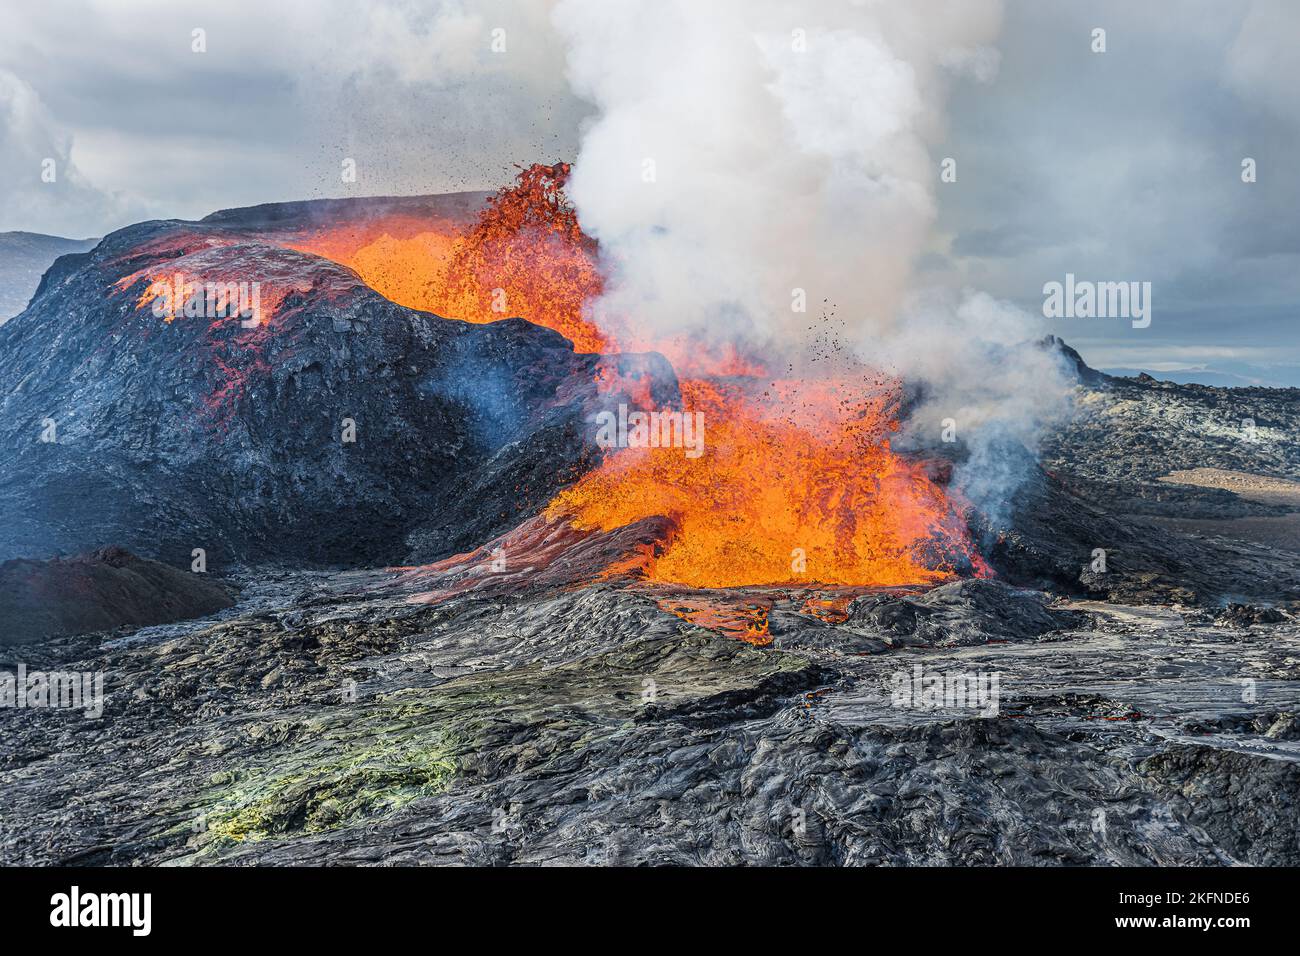 Aktiver Vulkan auf Island. Glühende heiße Lava mit Brunnen vom Vulkankrater auf der Halbinsel Reykjanes. Landschaft im Geopark bei Tageslicht. Stockfoto